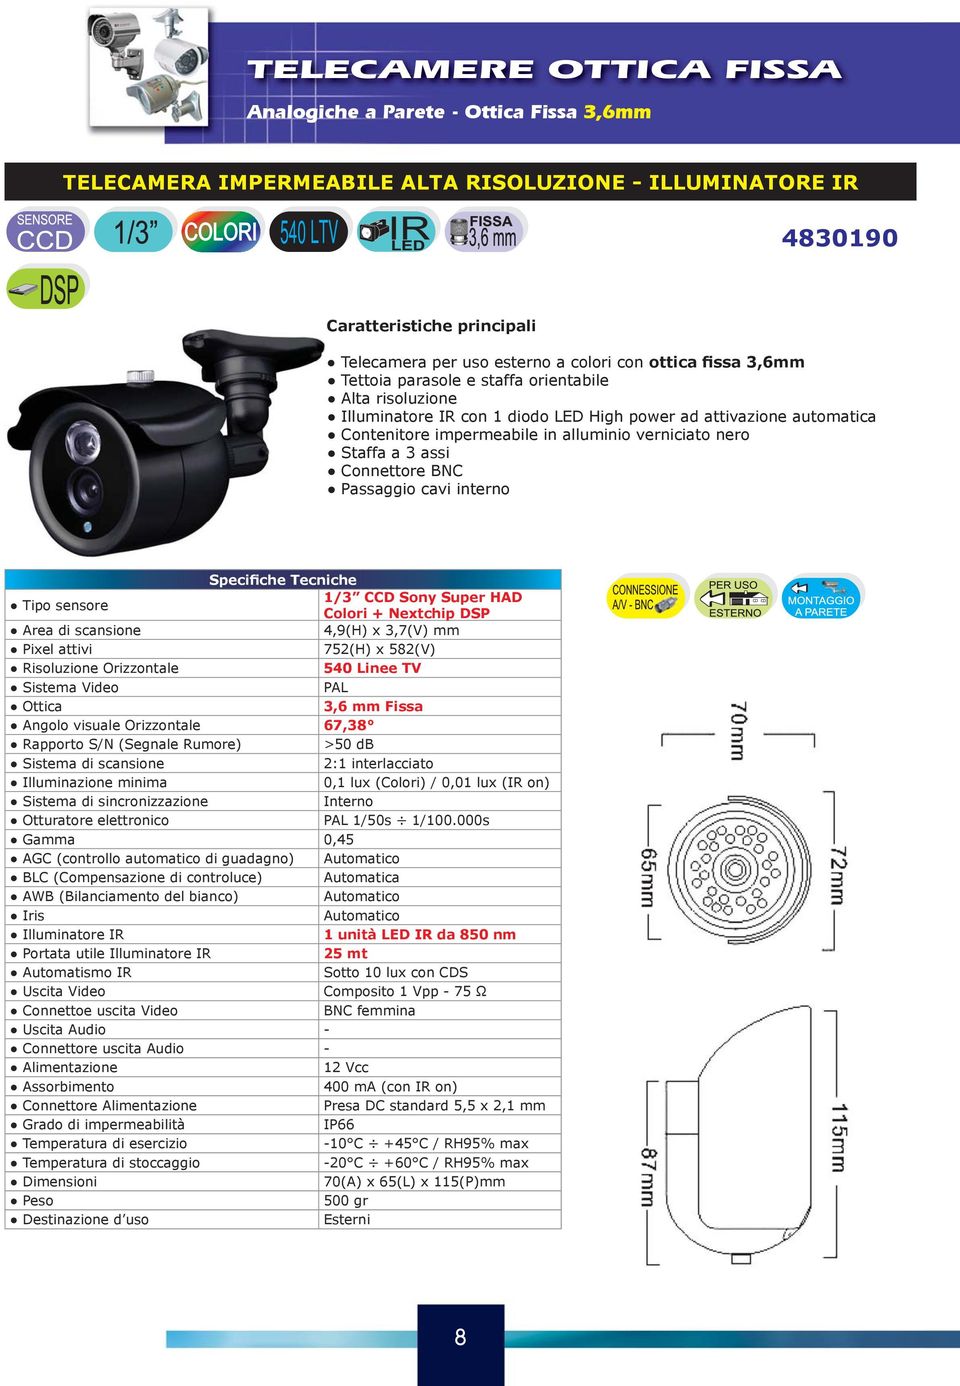 BNC Passaggio cavi interno 1/3 CCD Sony Super HAD Colori + Nextchip DSP 752(H) x 582(V) 540 Linee TV 3,6 mm Fissa Angolo visuale Orizzontale 67,38 >50 db 0,1 lux (Colori) / 0,01 lux (IR on)